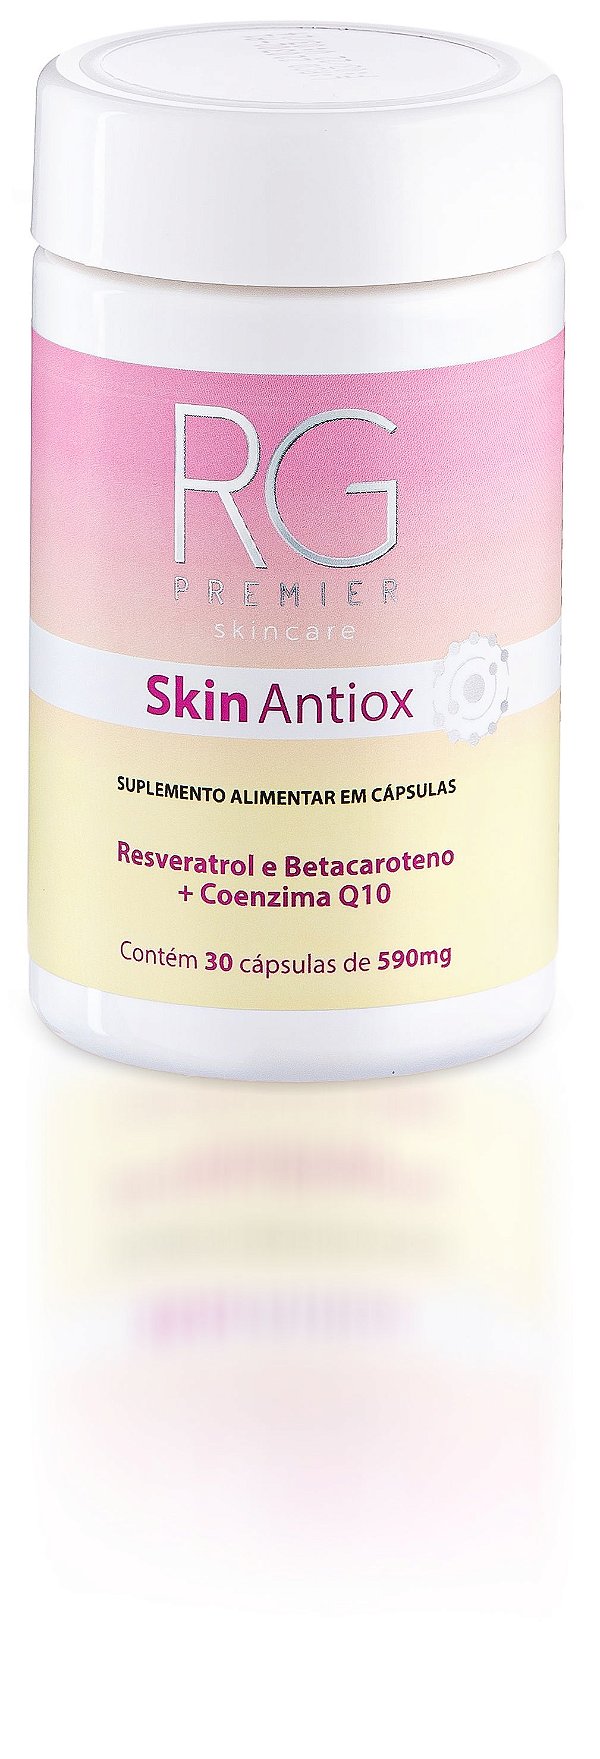 Skin Antiox - Suplemento Alimentar em Cápsulas.